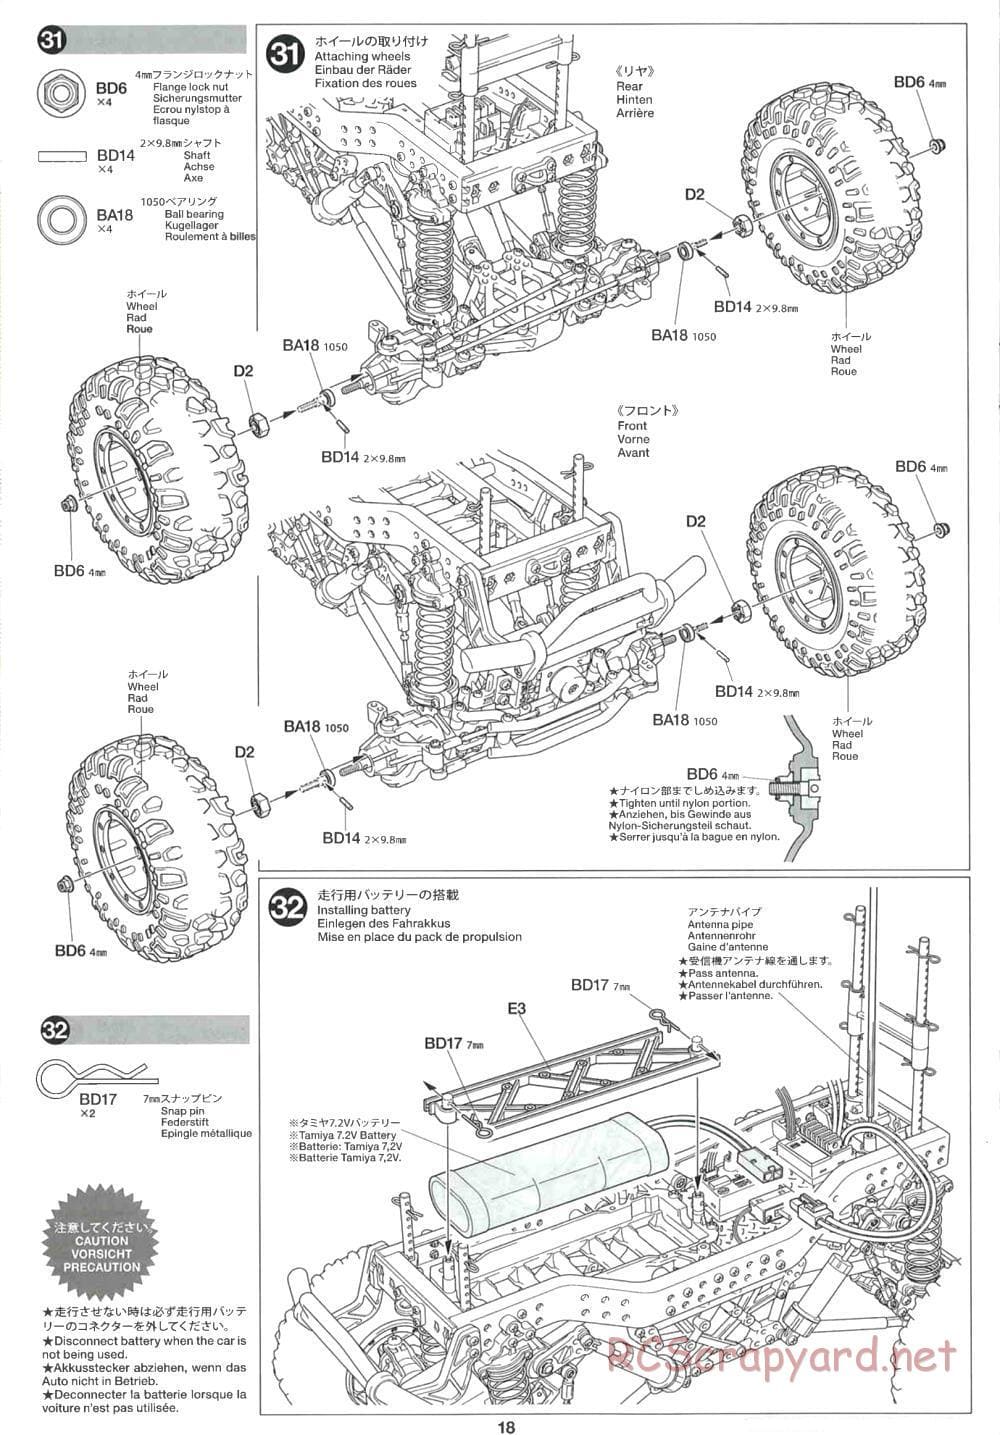 Tamiya - CR-01 Chassis - Manual - Page 18